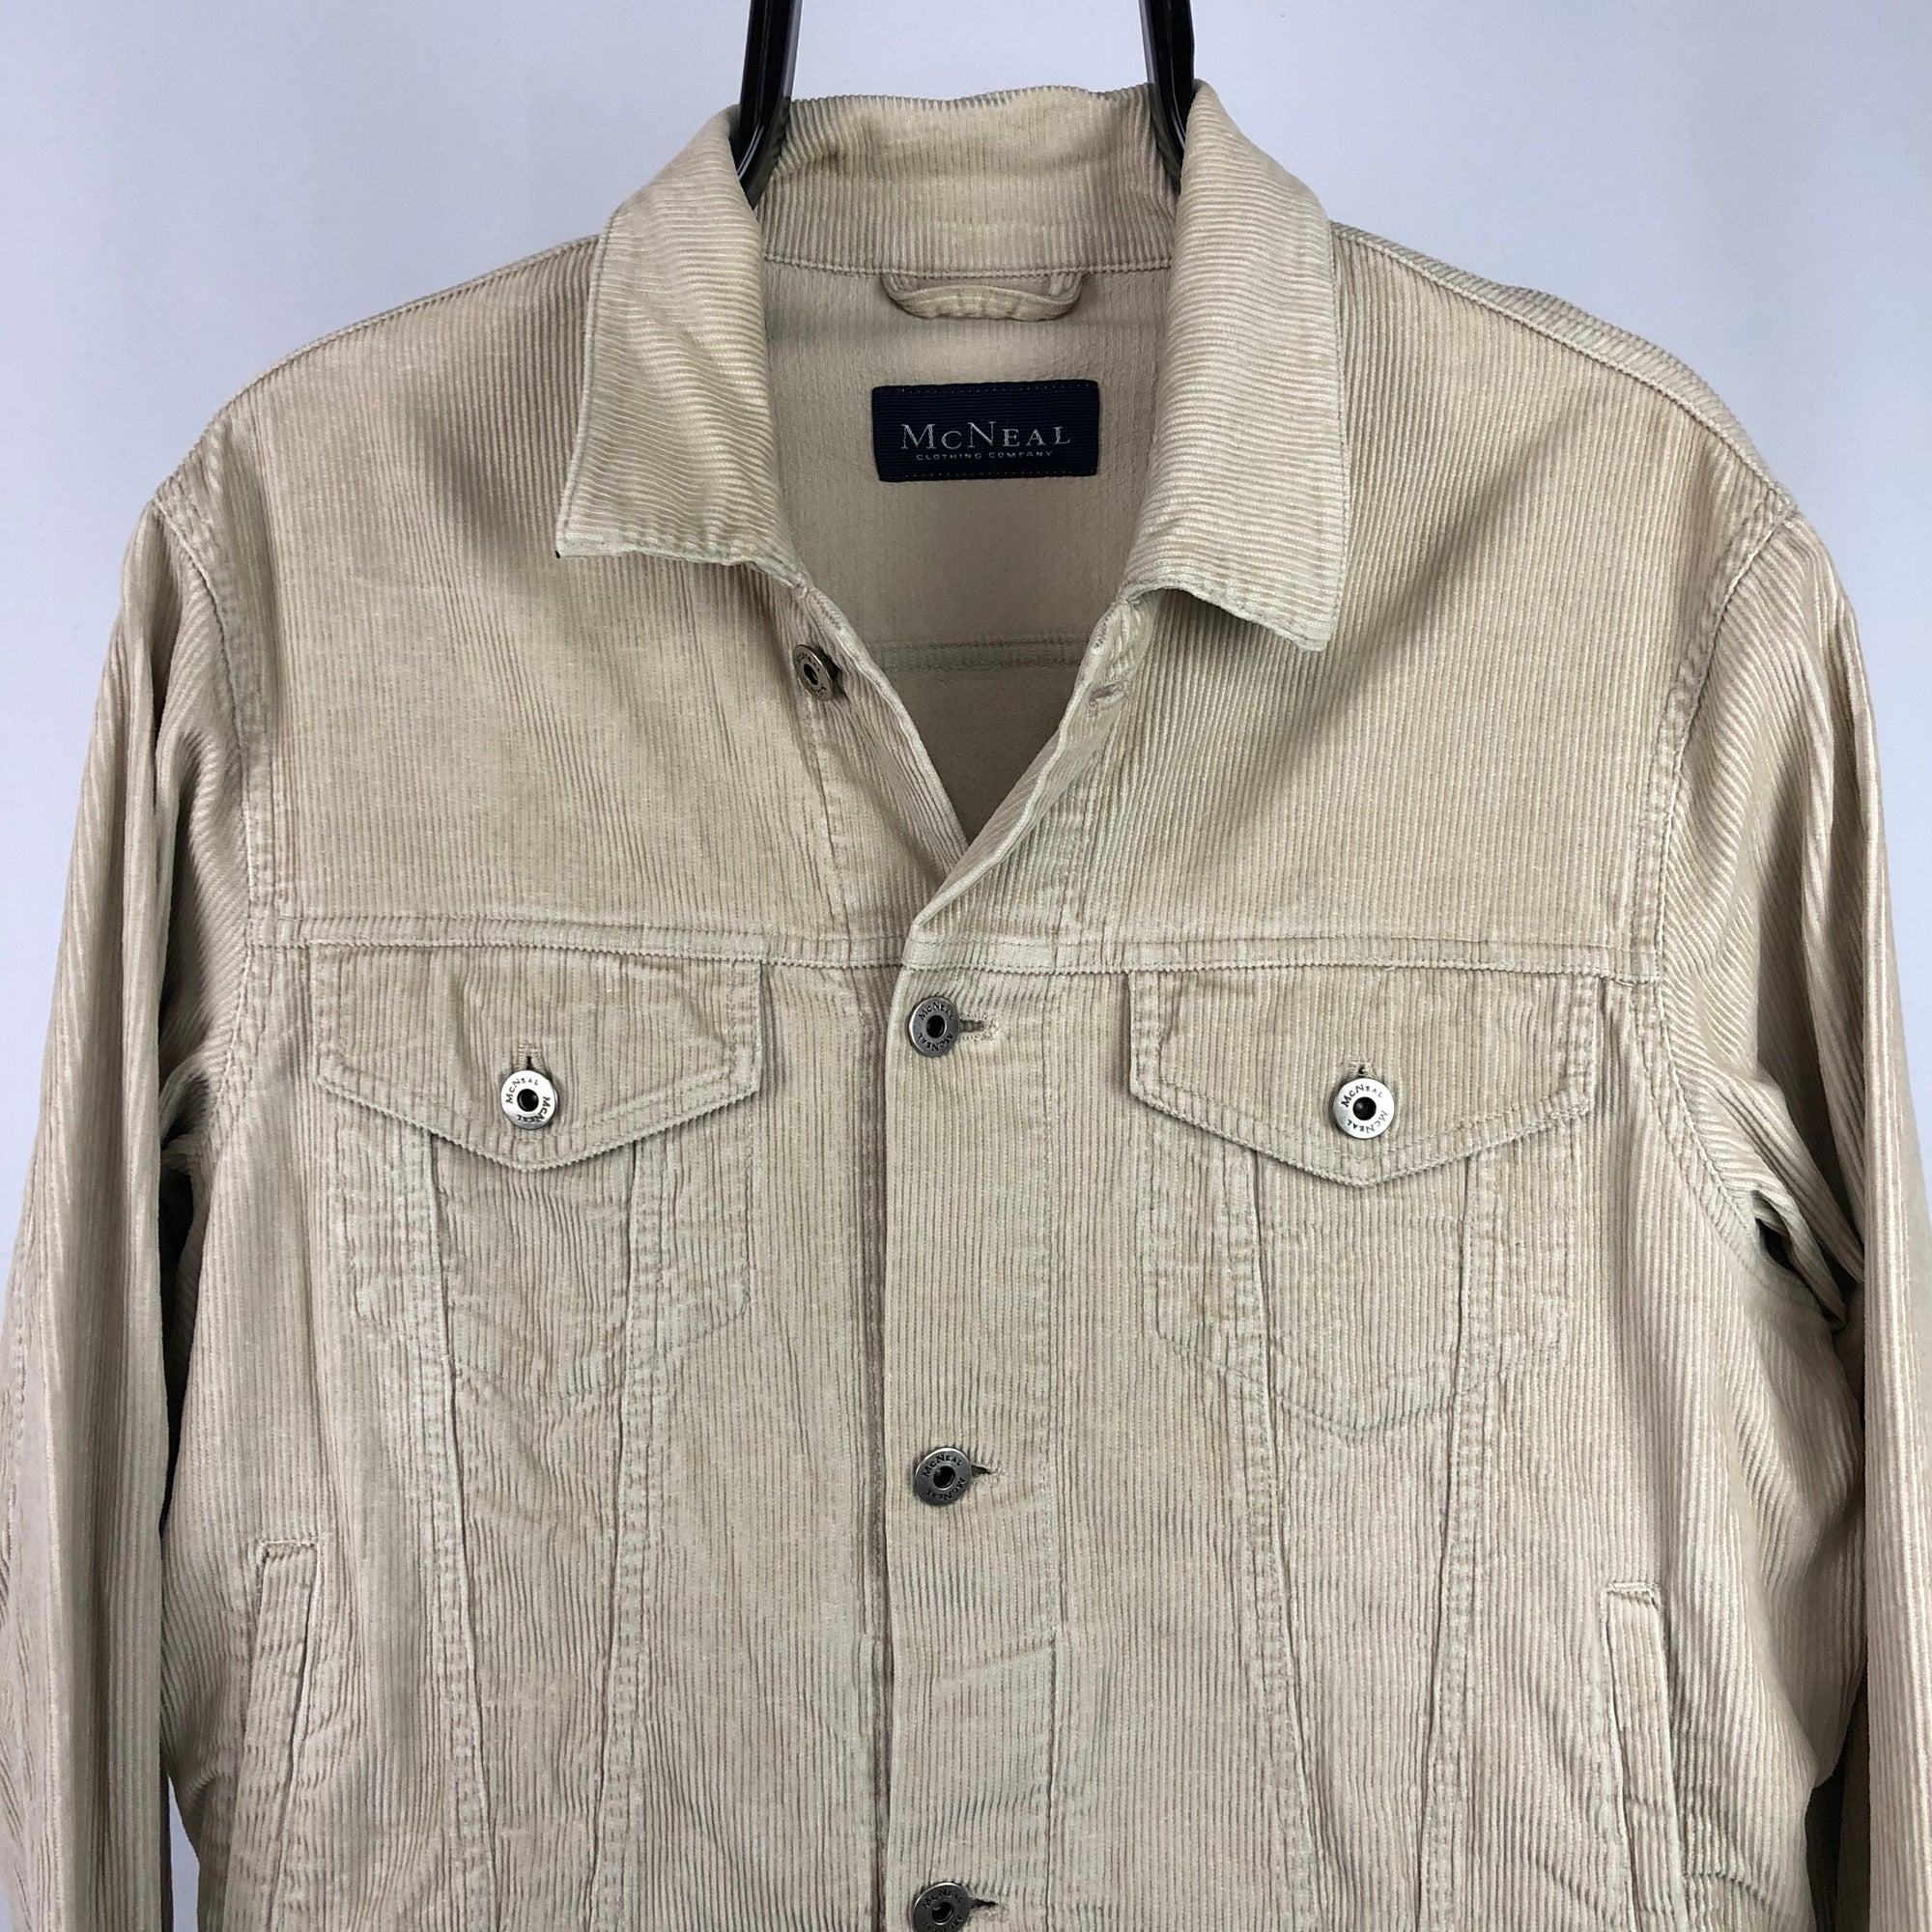 Corduroy Shirt Jacket in Beige - Men's Small/Women's Medium